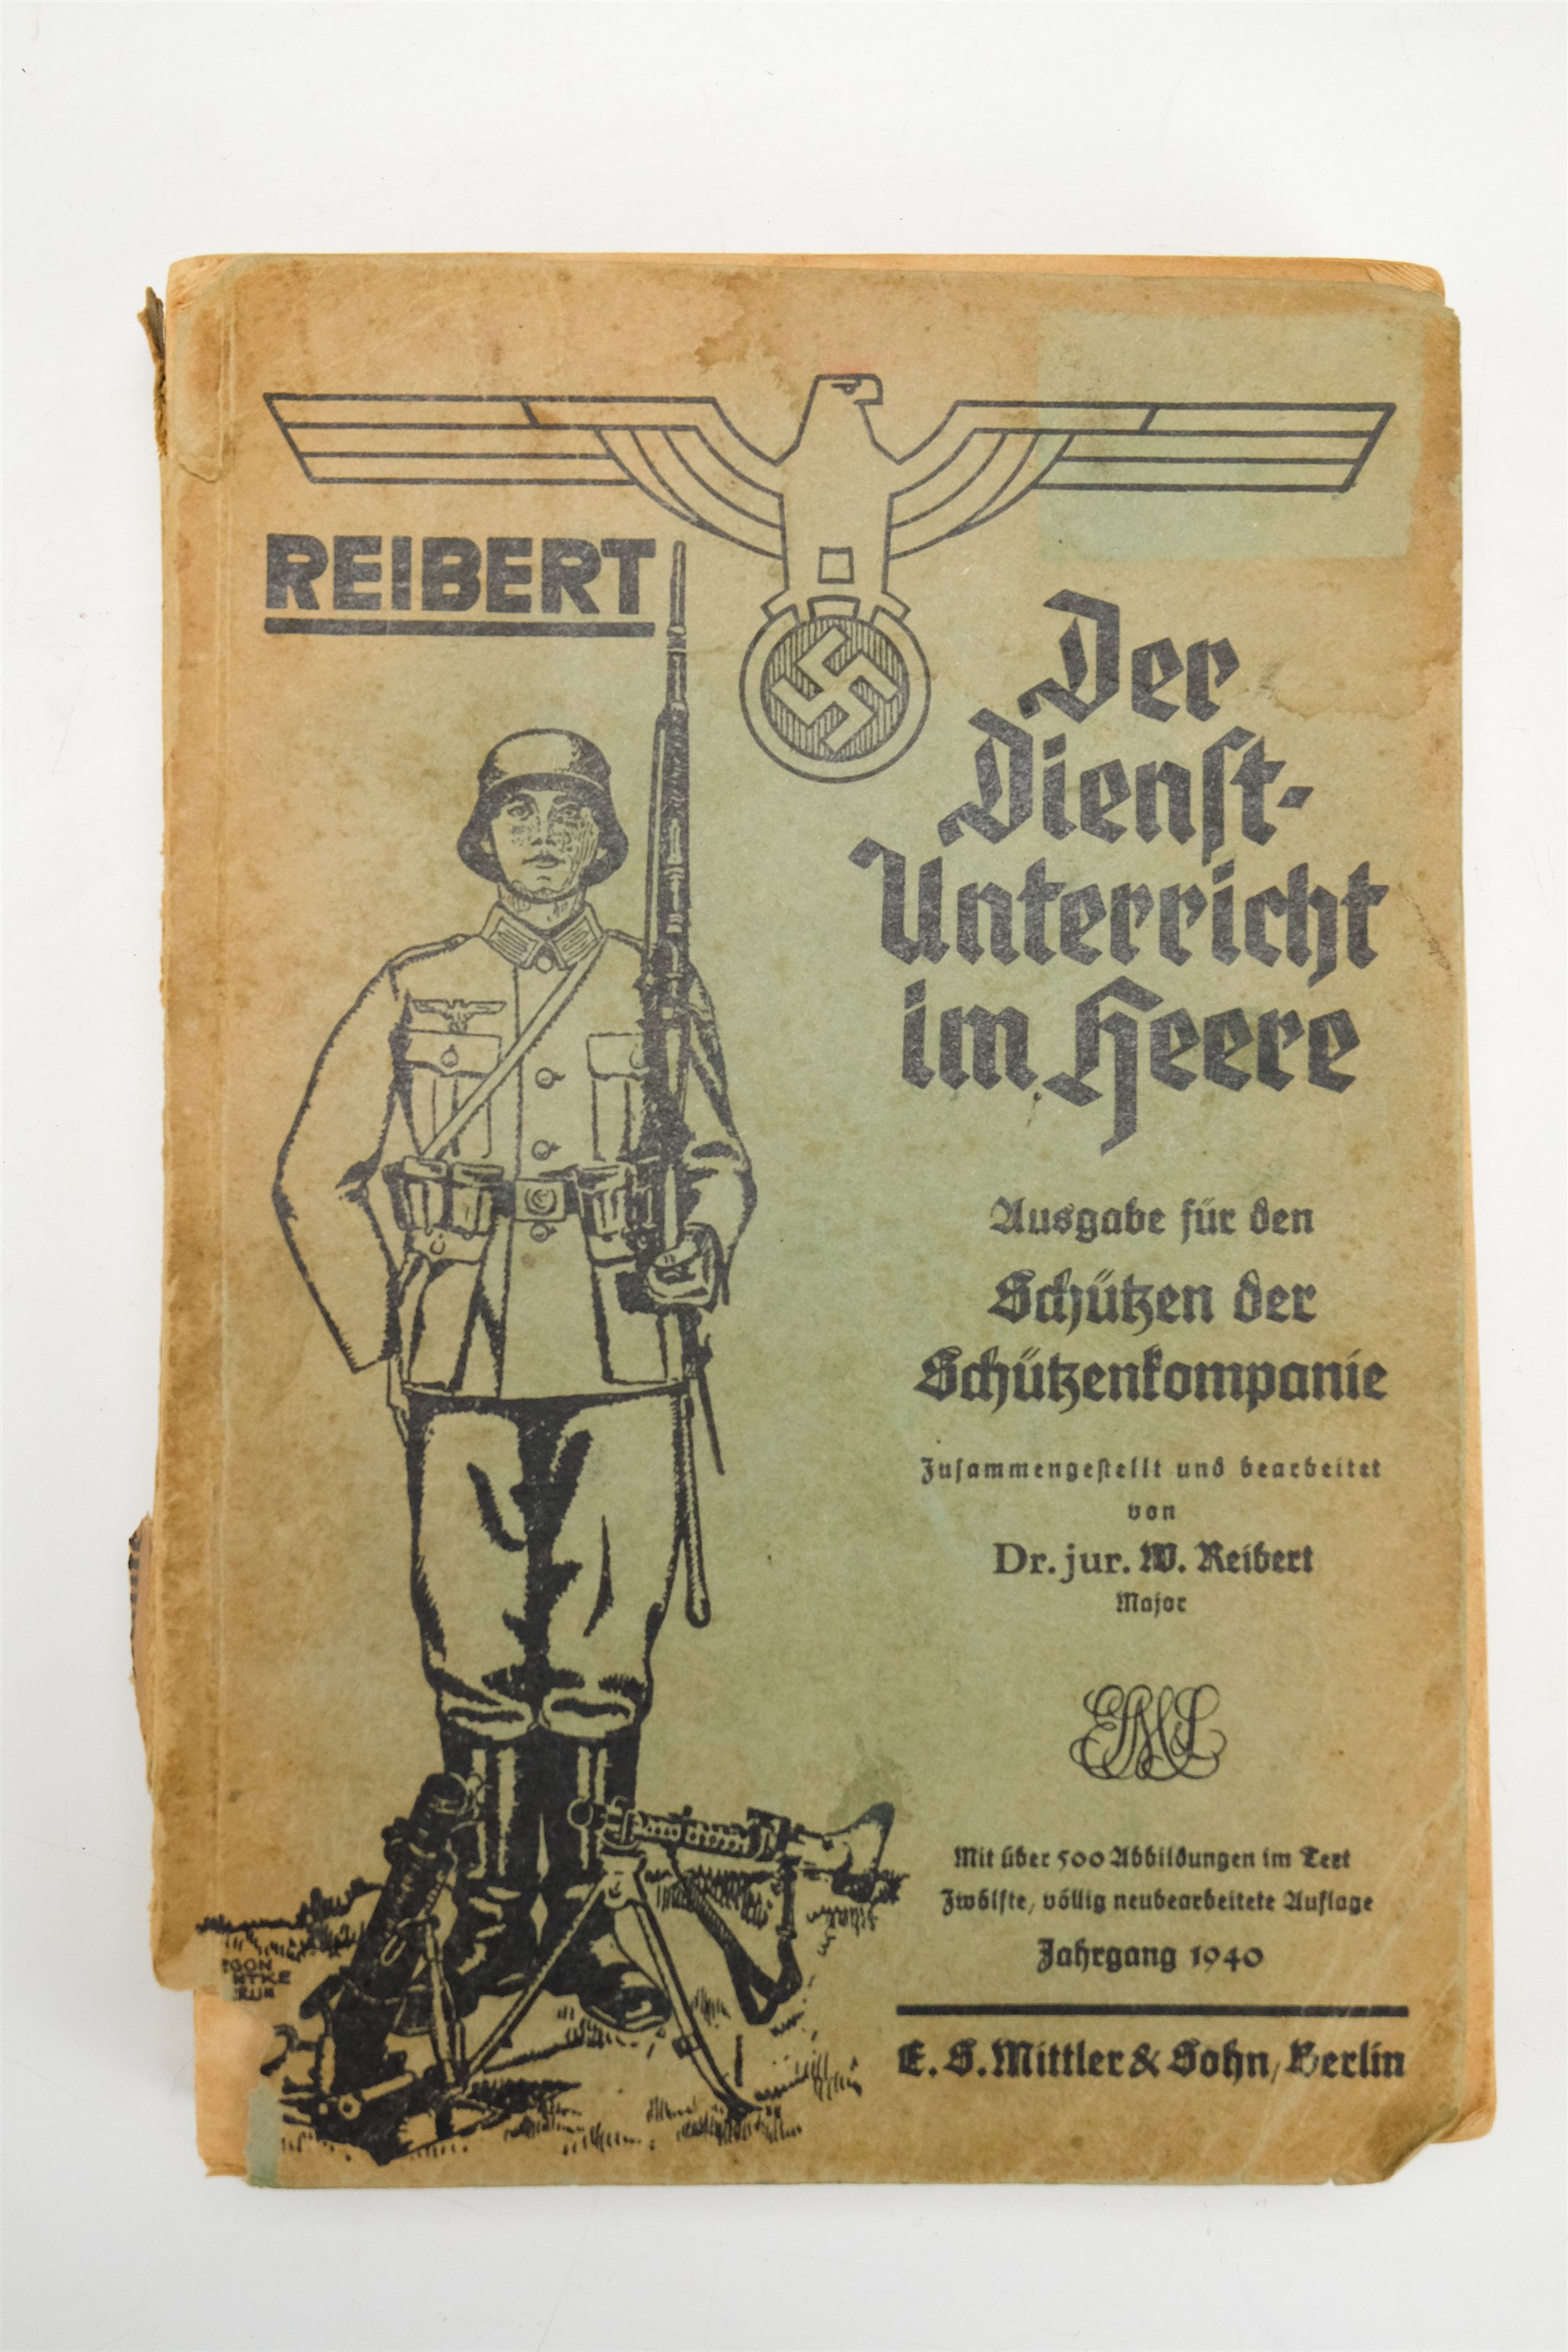 A 1940 German Third Reich army handbook "Der Dienst Unterricht in Heere"